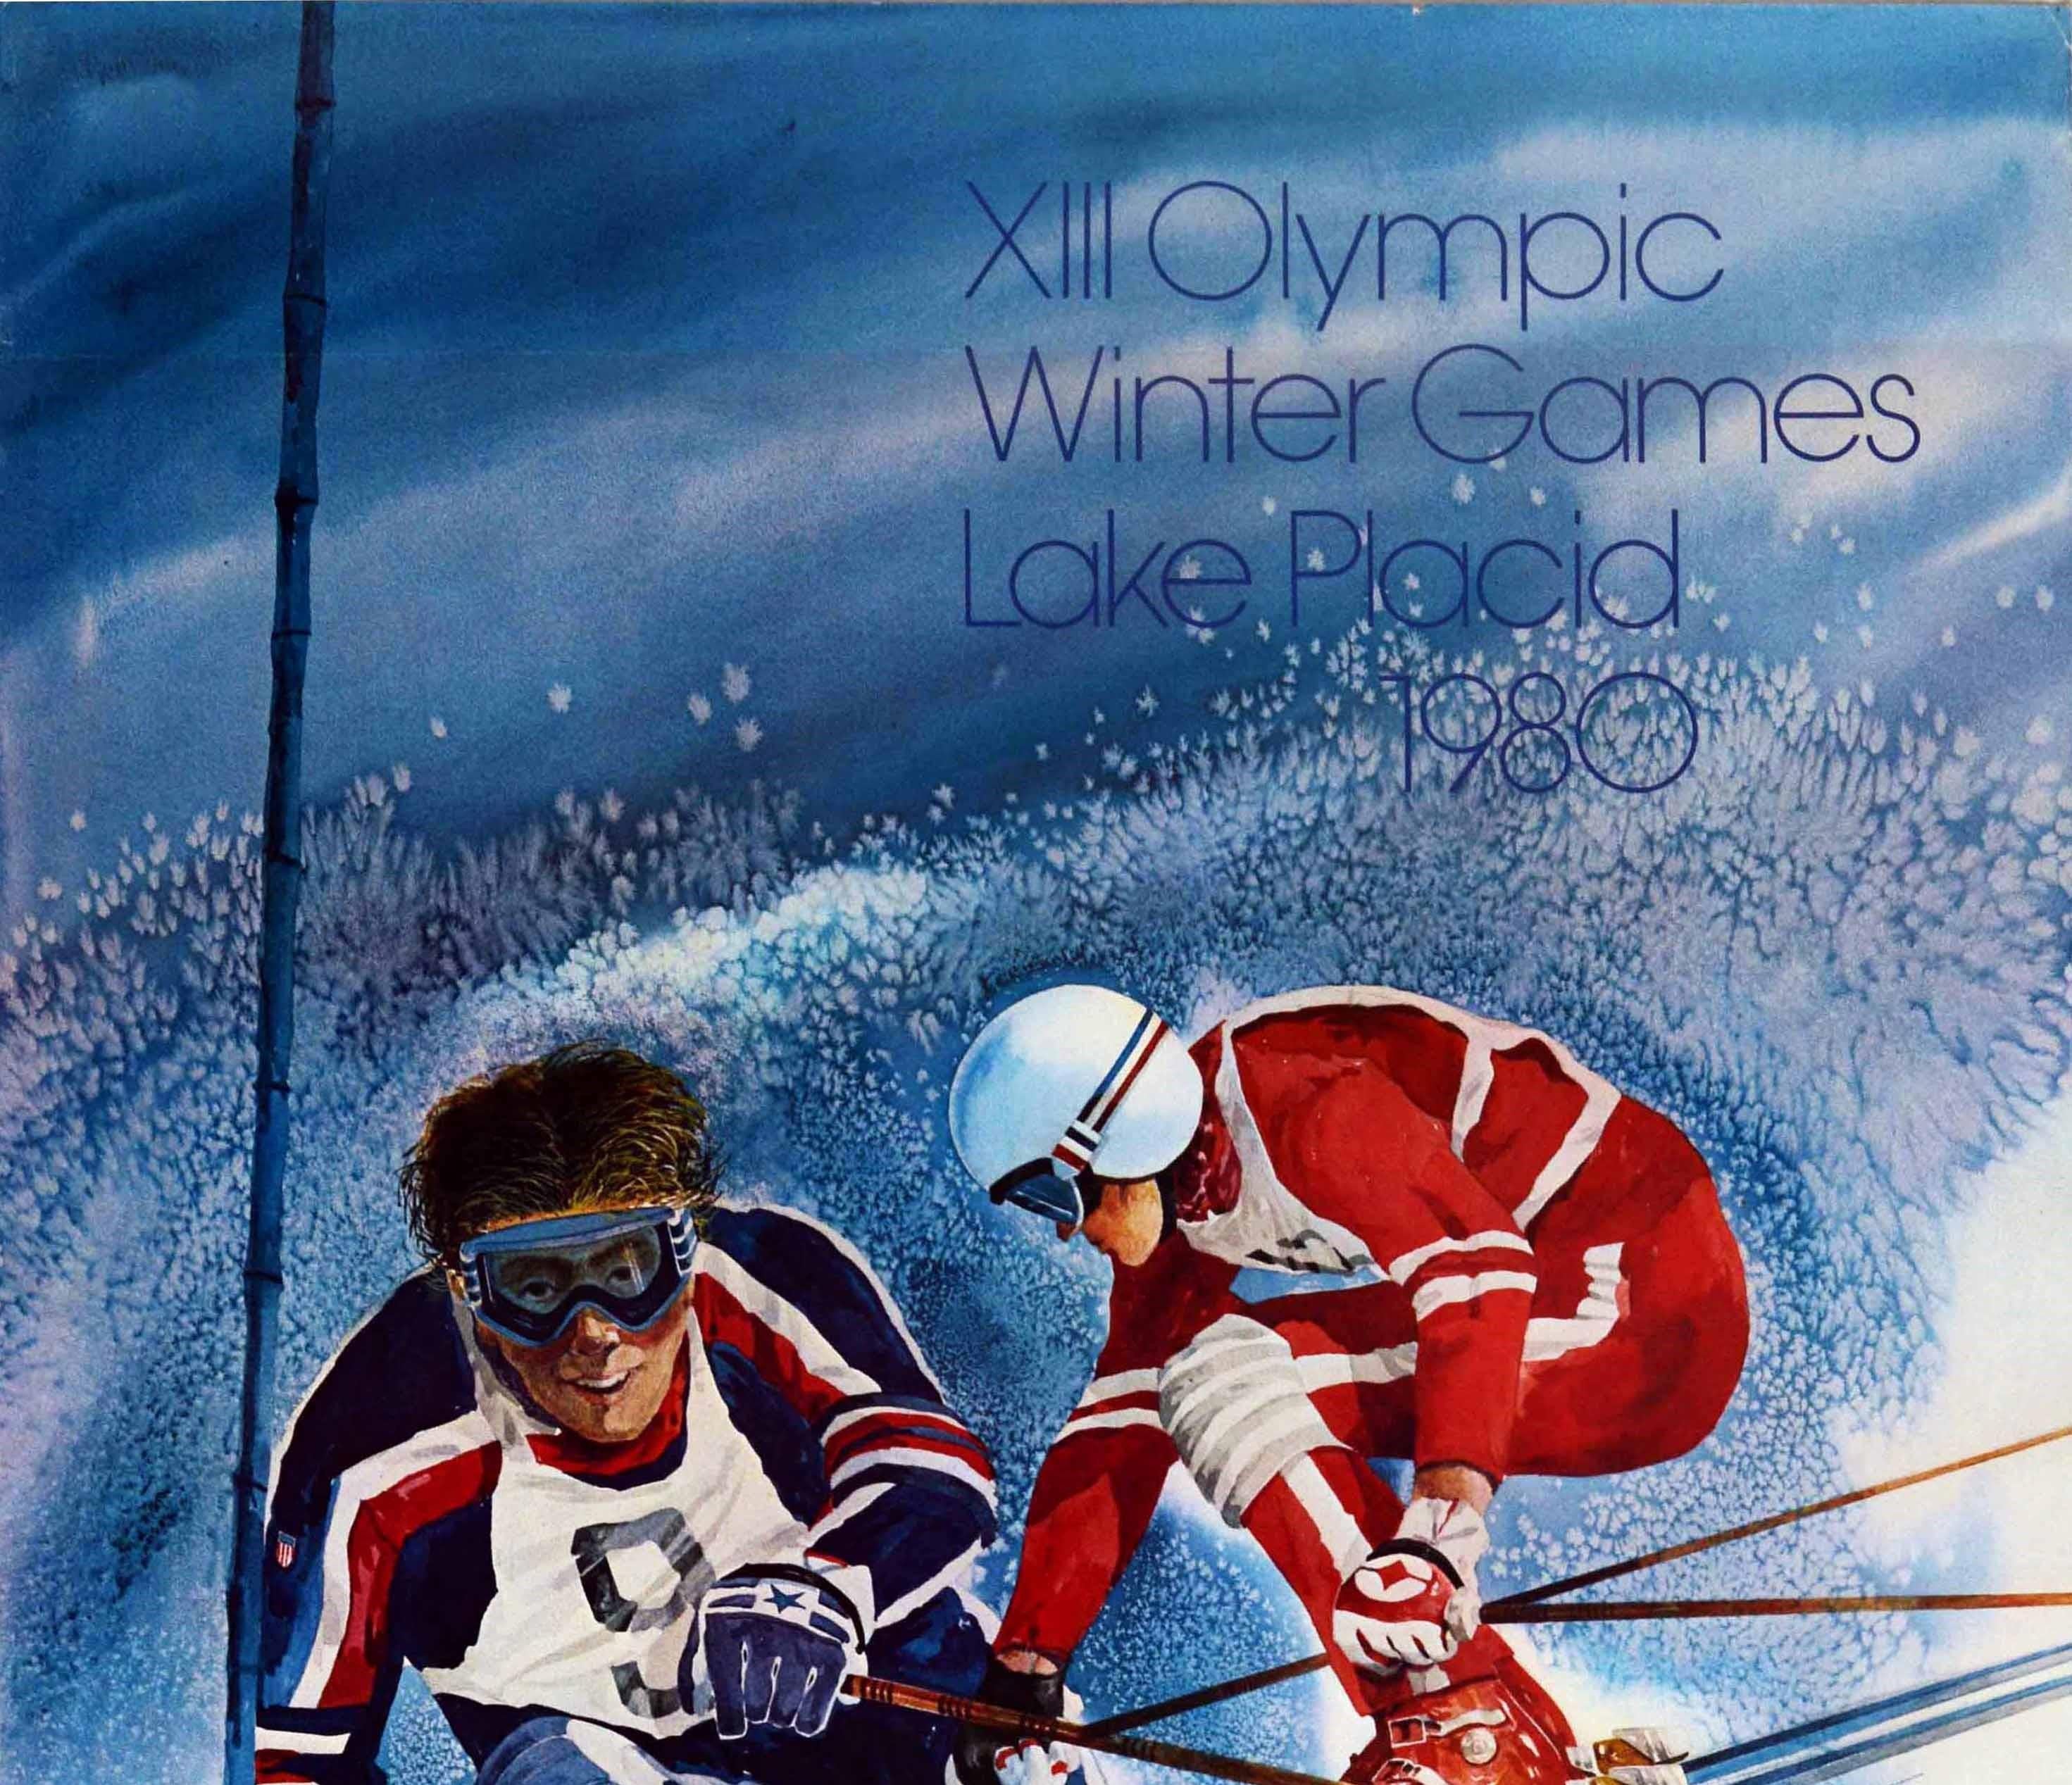 Original Vintage-Werbeplakat für die XIII. Olympischen Winterspiele Lake Placid 1980 in New York USA vom 13. bis 24. Februar mit einer dynamischen Illustration von zwei Skifahrern in roten, blauen und weißen Skianzügen, von denen einer im Slalom an